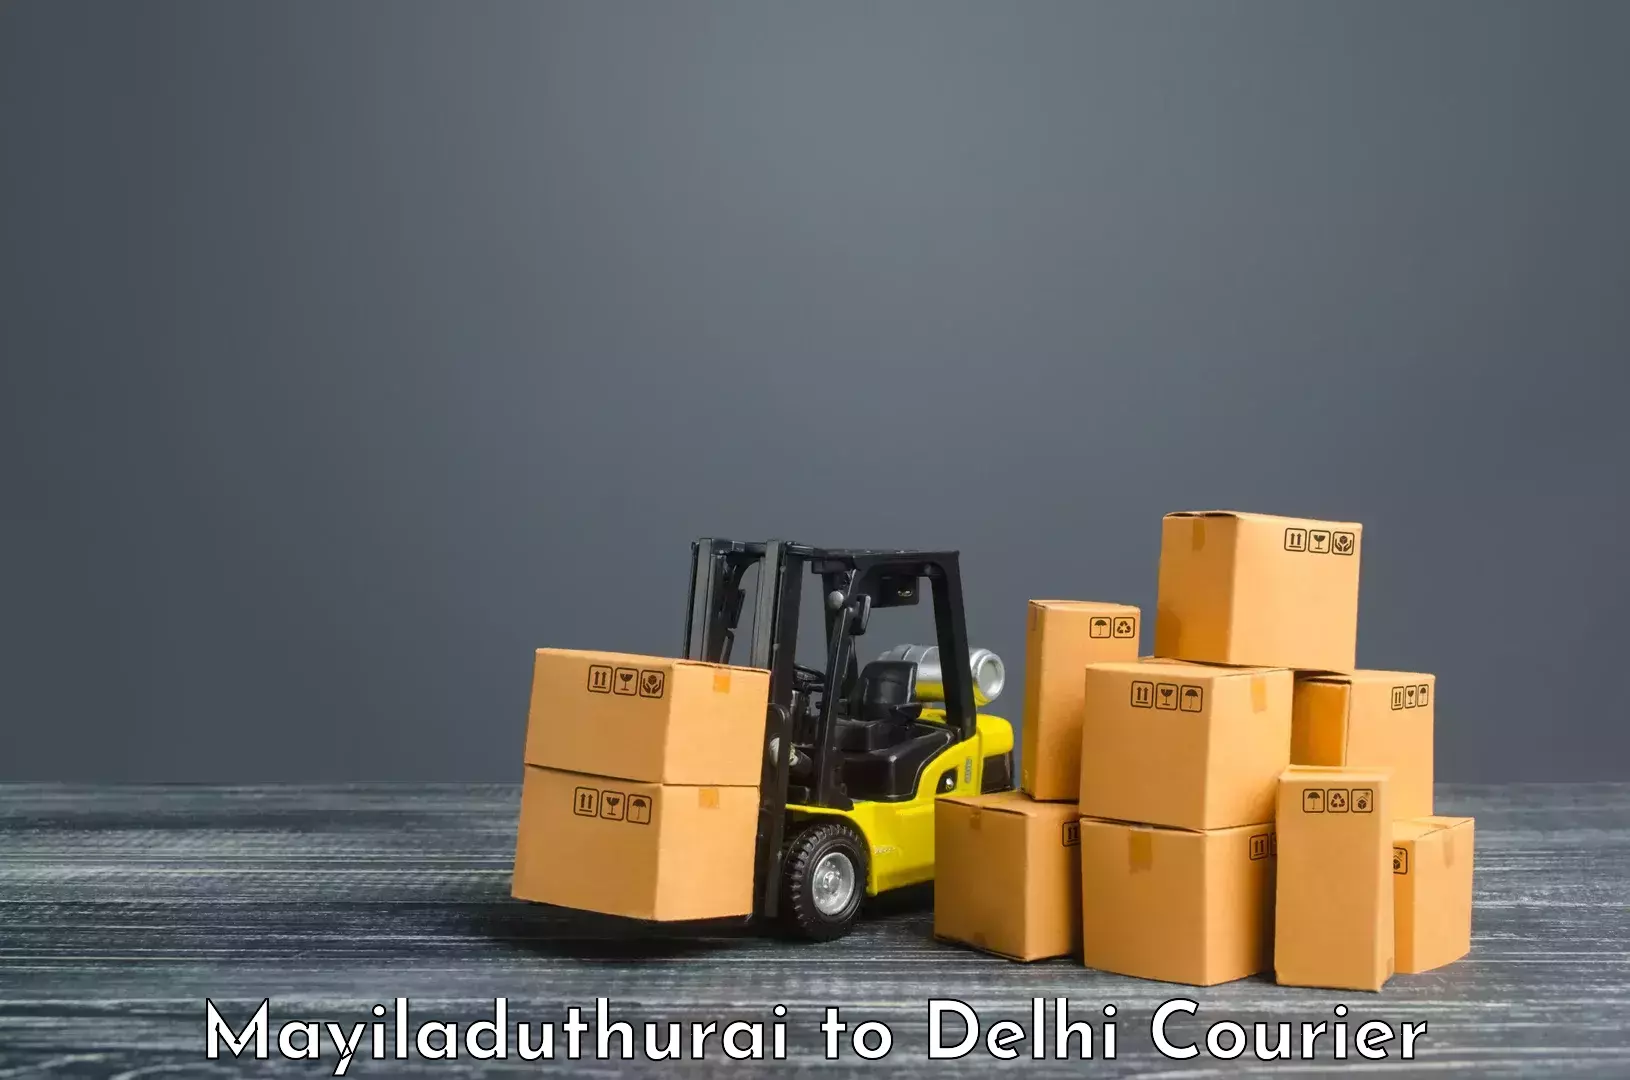 Digital shipping tools Mayiladuthurai to NIT Delhi